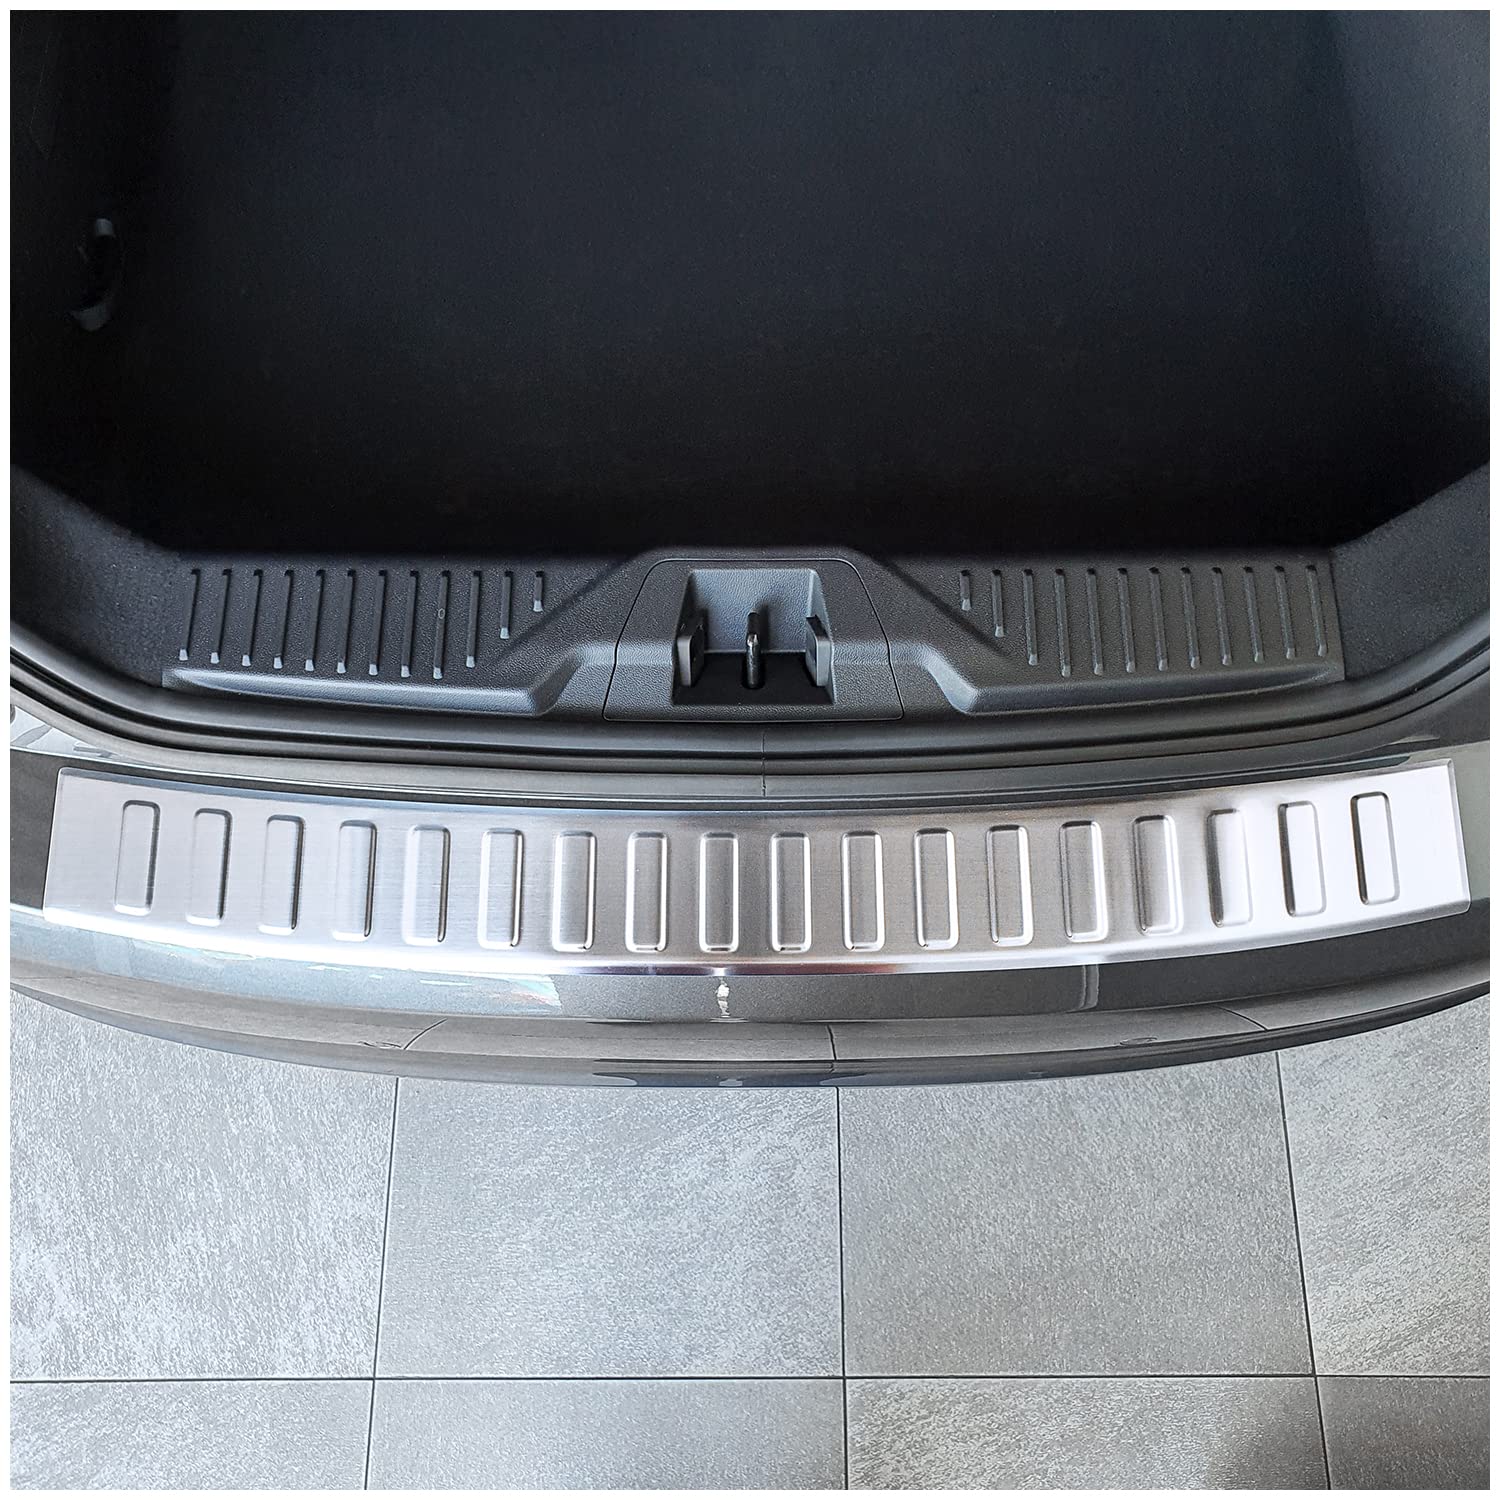 teileplus24 L691 Ladekantenschutz V2A Edelstahl kompatibel mit Ford Fiesta'18 2017- Abkantung, Farbe:Silber gebürstet von teileplus24